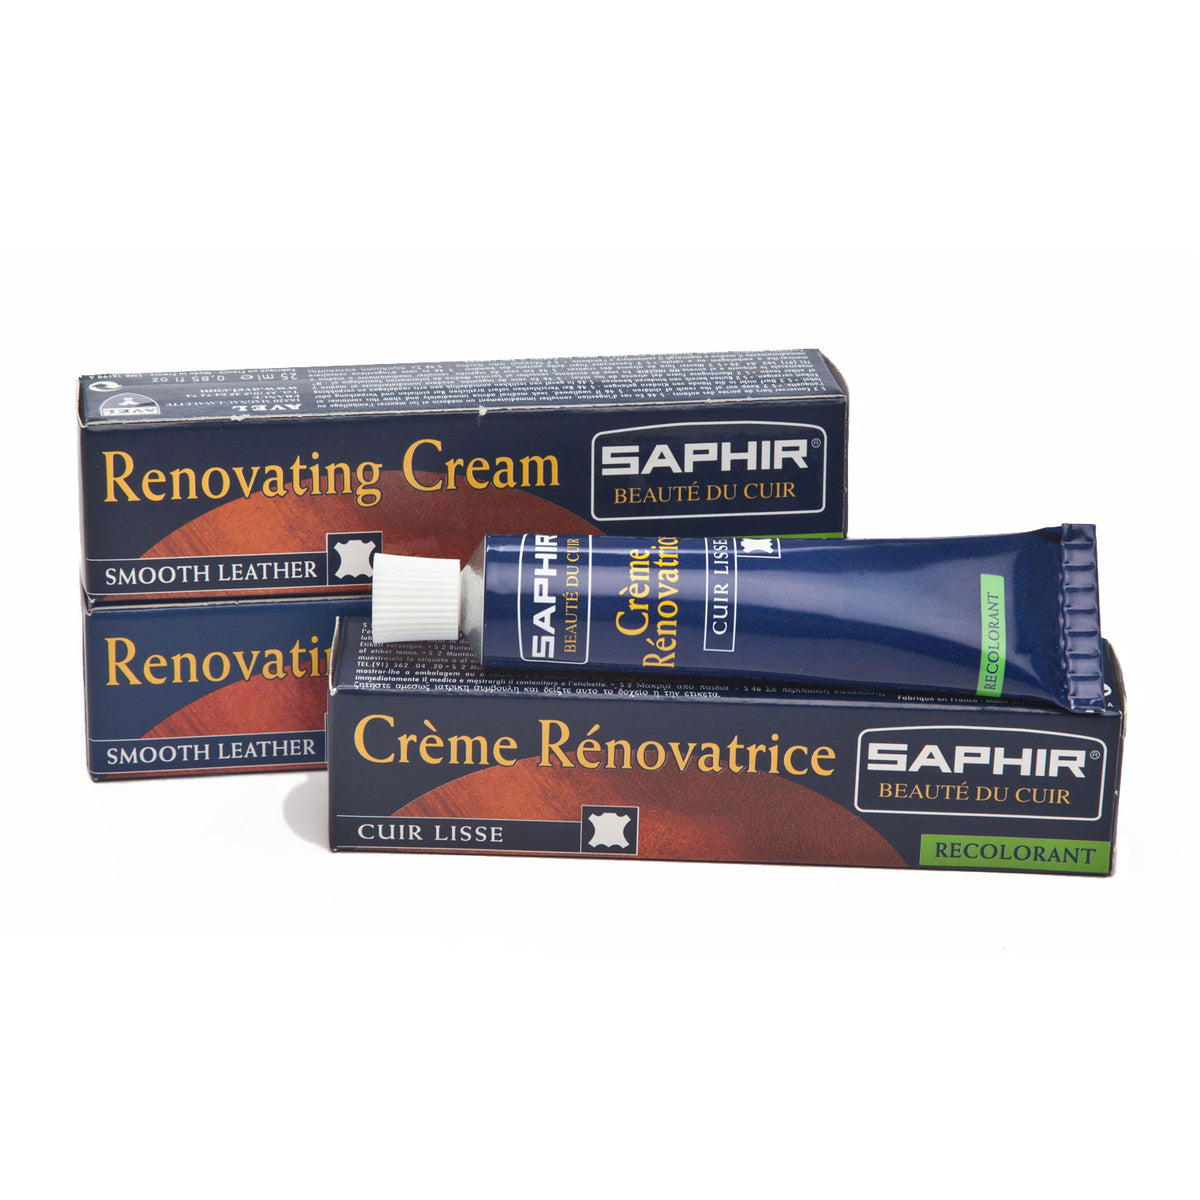 Saphir Renovating Recolorant Repair Cream